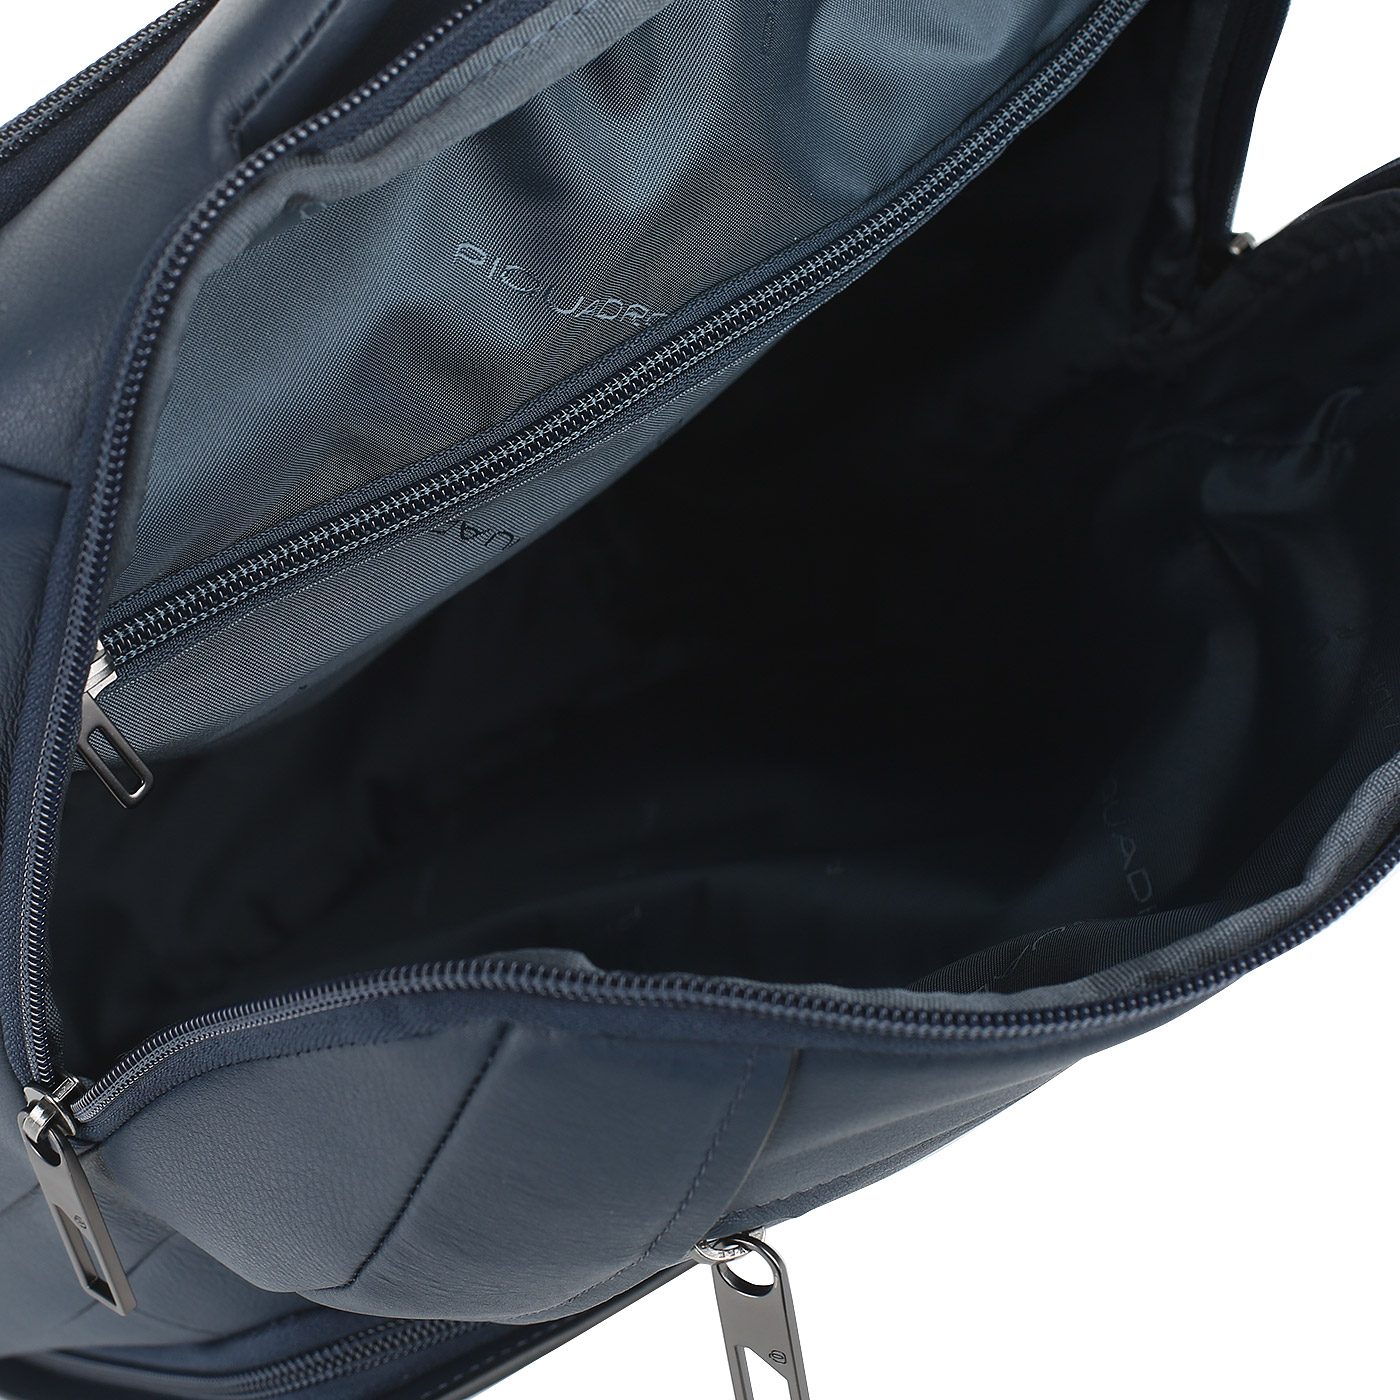 Рюкзак с креплением на ручку чемодана Piquadro Akron